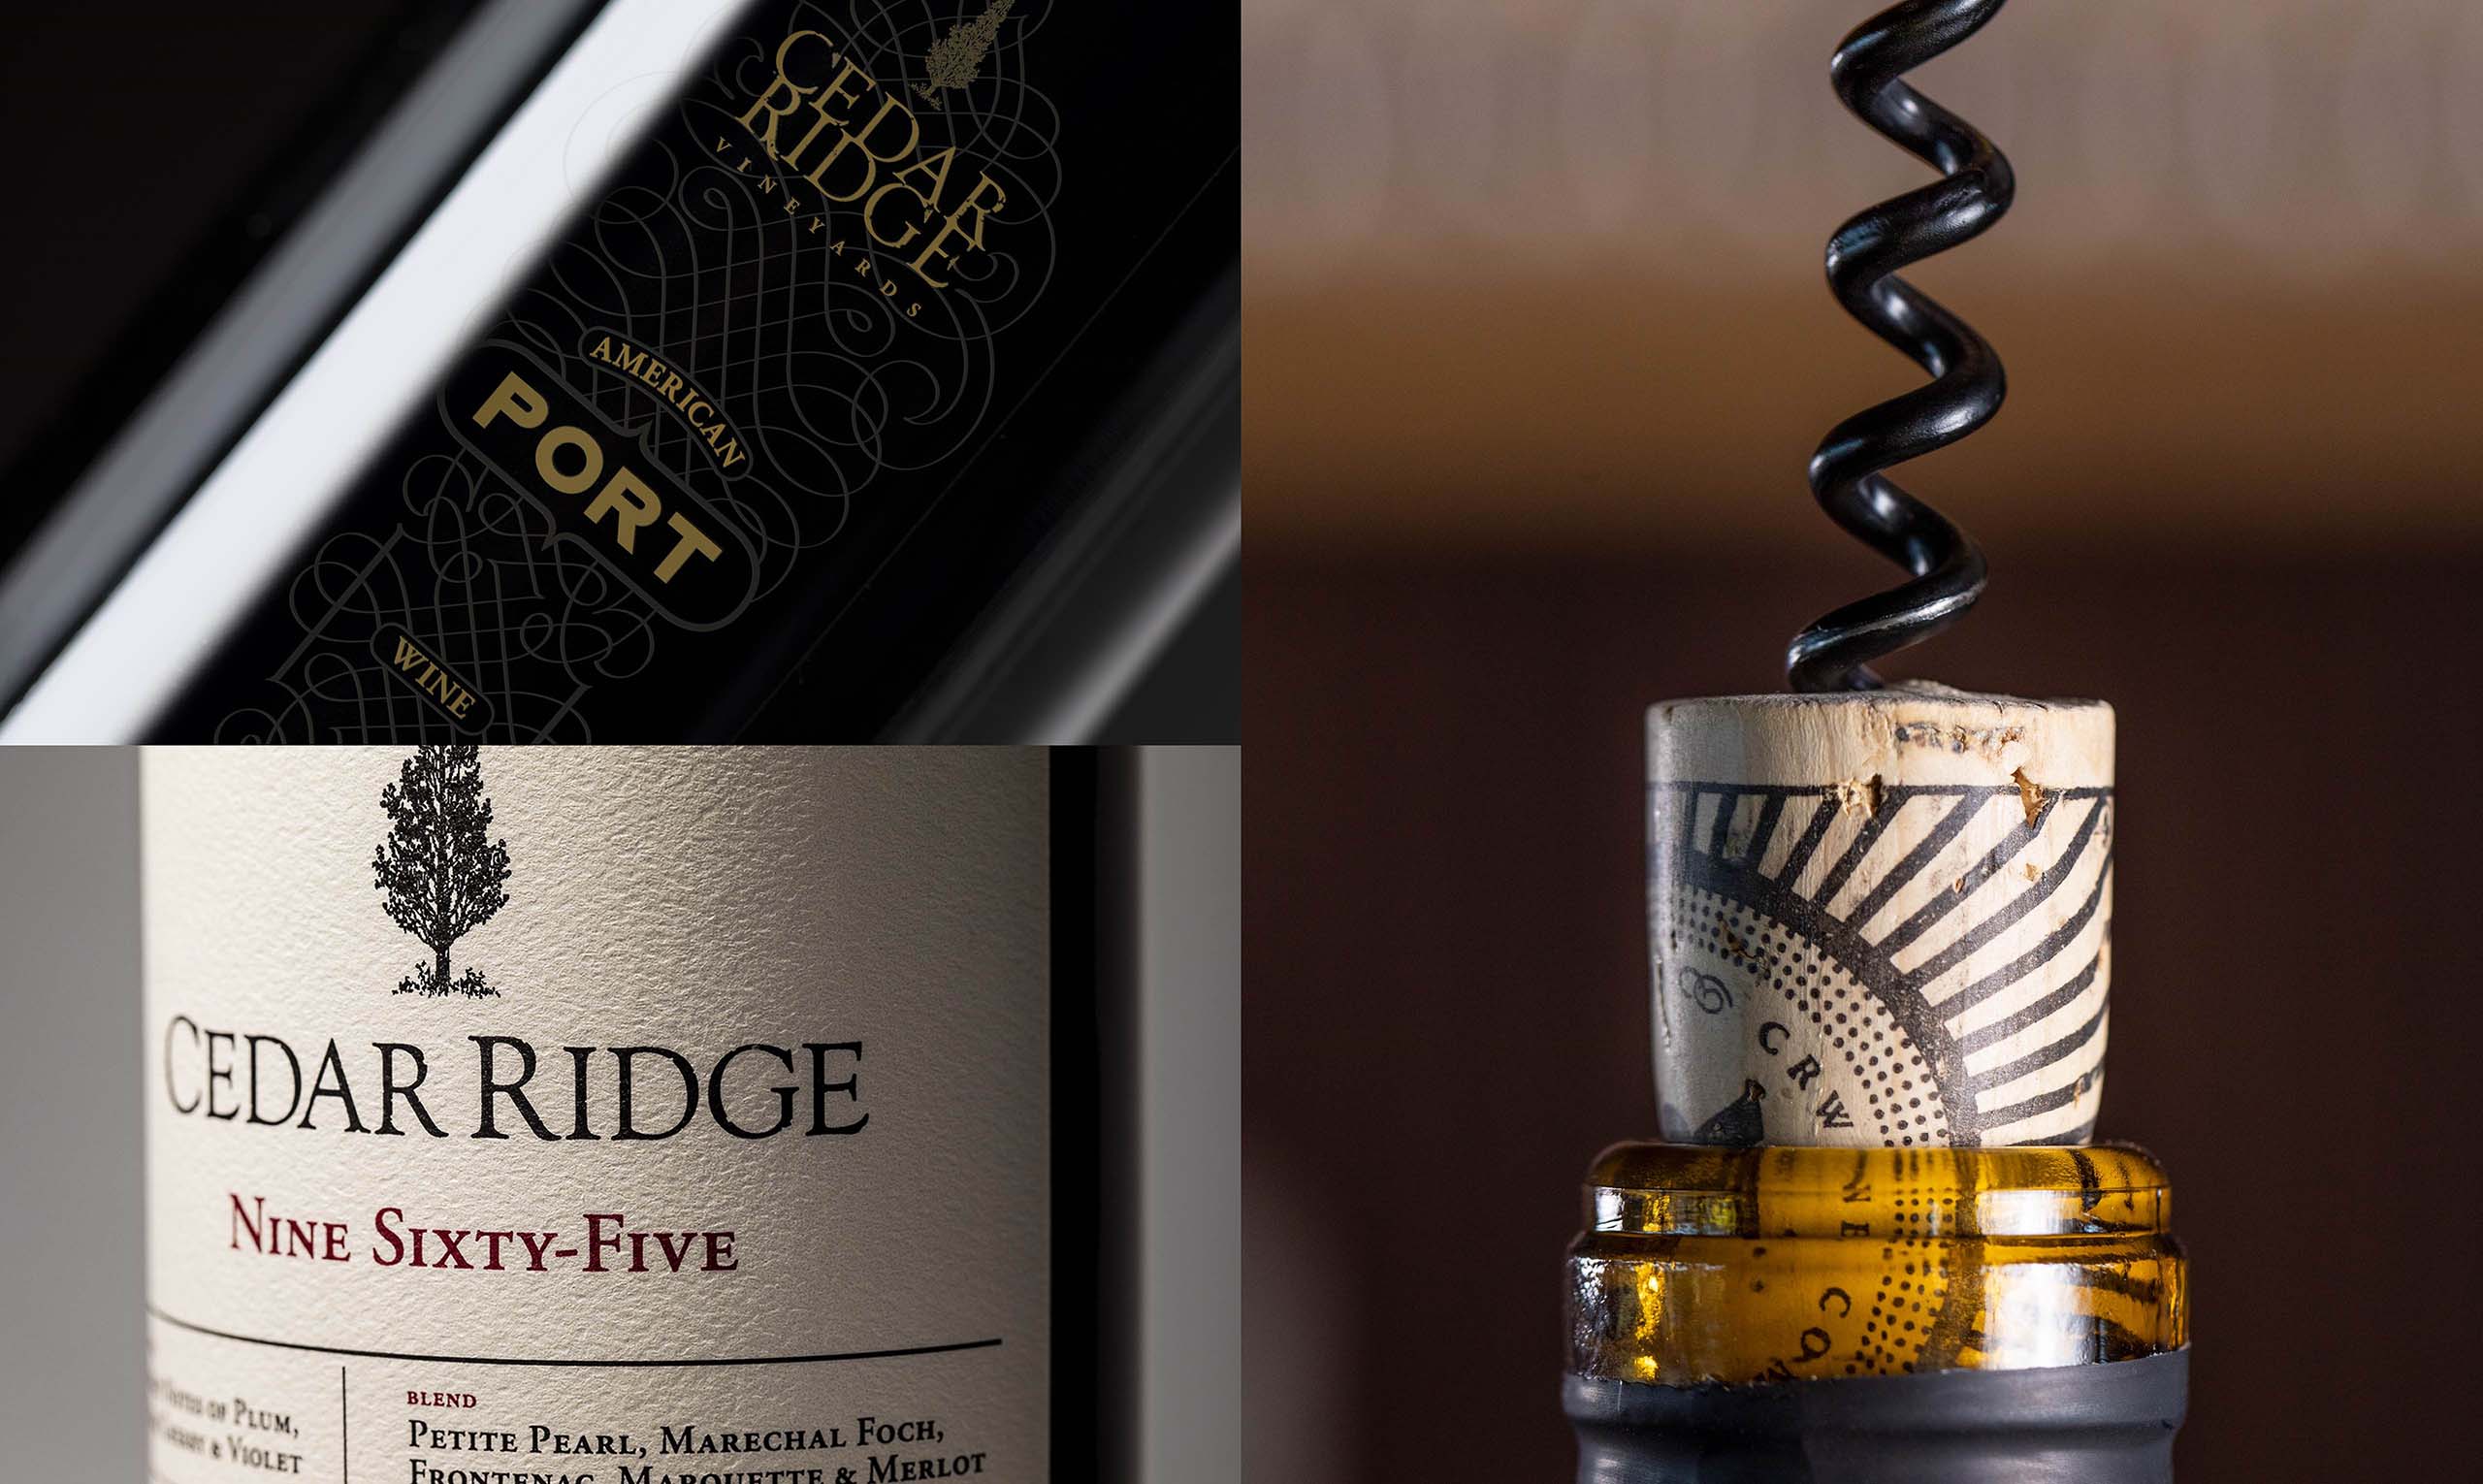 Cedar Ridge wine bottles and cork